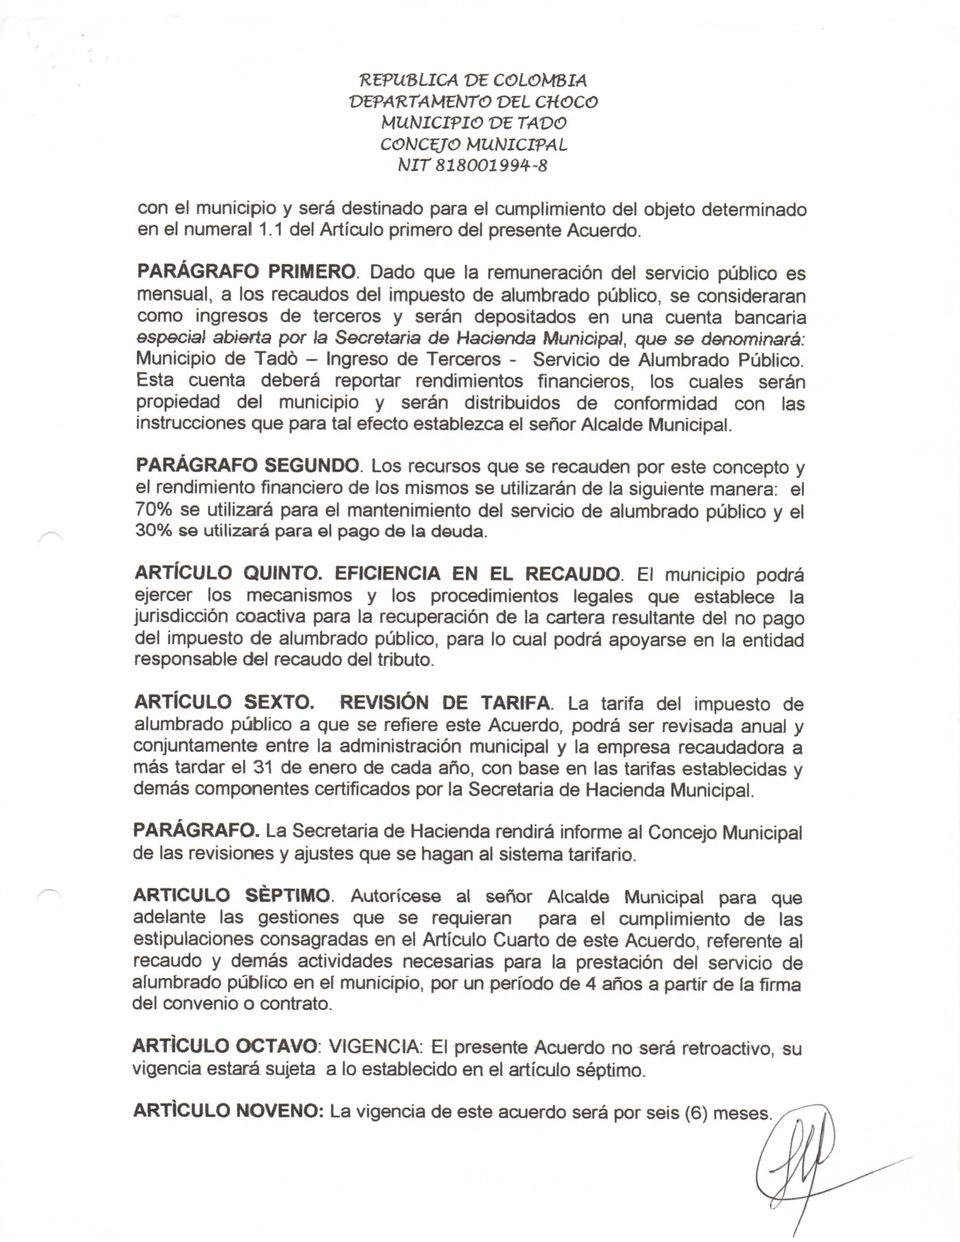 especial abierta por a Secretaria de Hacienda Municipal, que se denominará: Municipio de Tadó - Ingreso de Terceros - Servicio de Alumbrado Público.